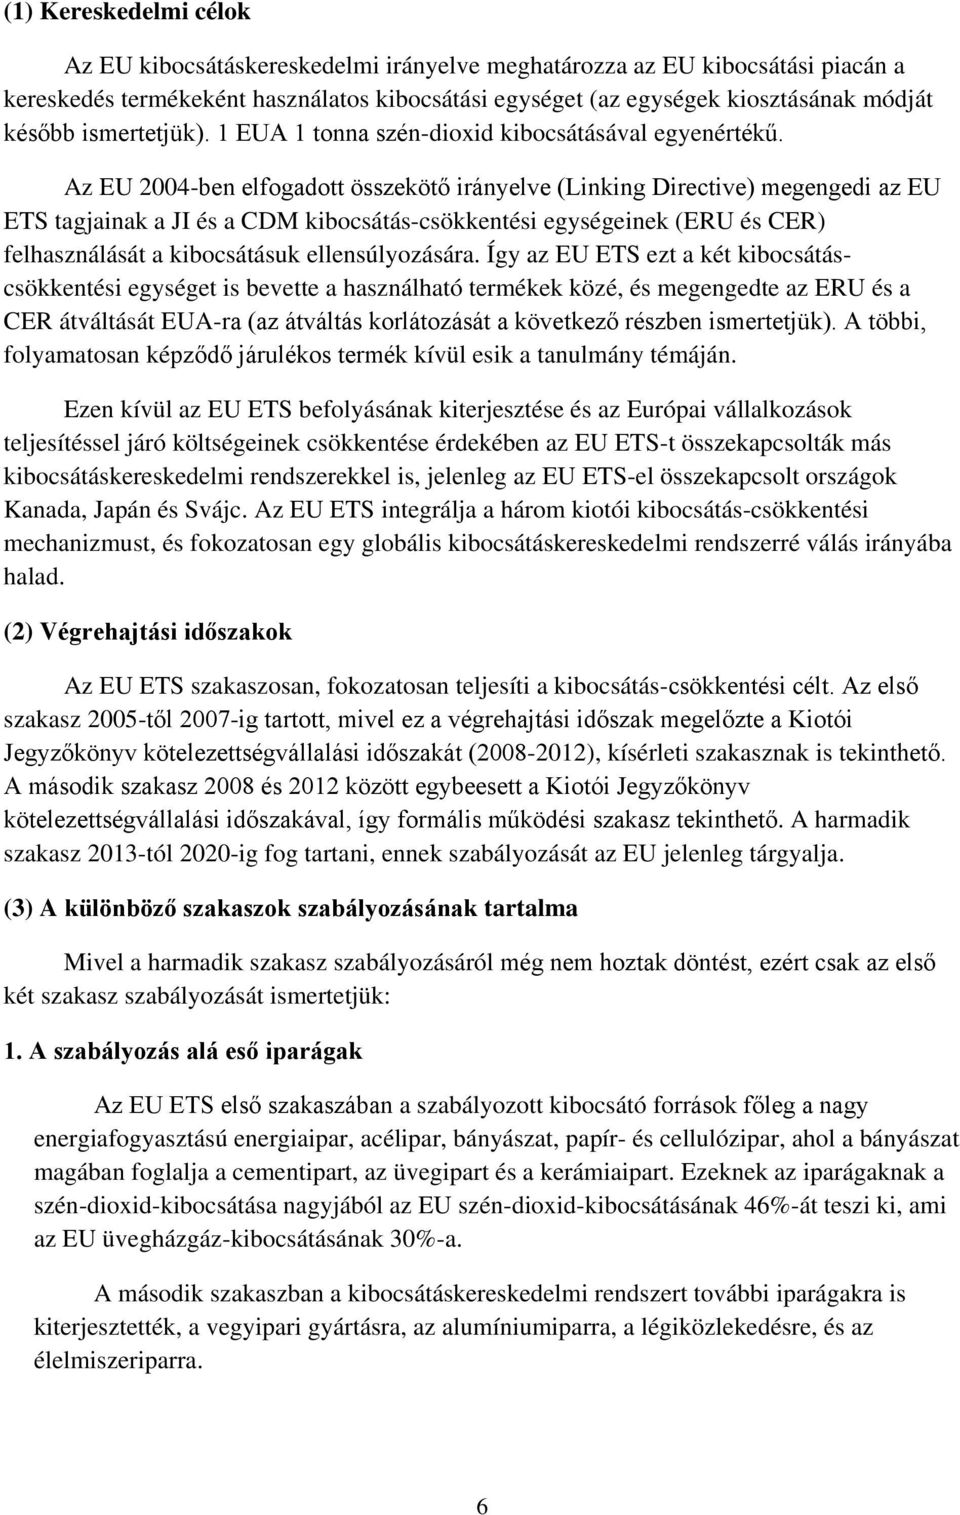 Az EU 2004-ben elfogadott összekötő irányelve (Linking Directive) megengedi az EU ETS tagjainak a JI és a CDM kibocsátás-csökkentési egységeinek (ERU és CER) felhasználását a kibocsátásuk